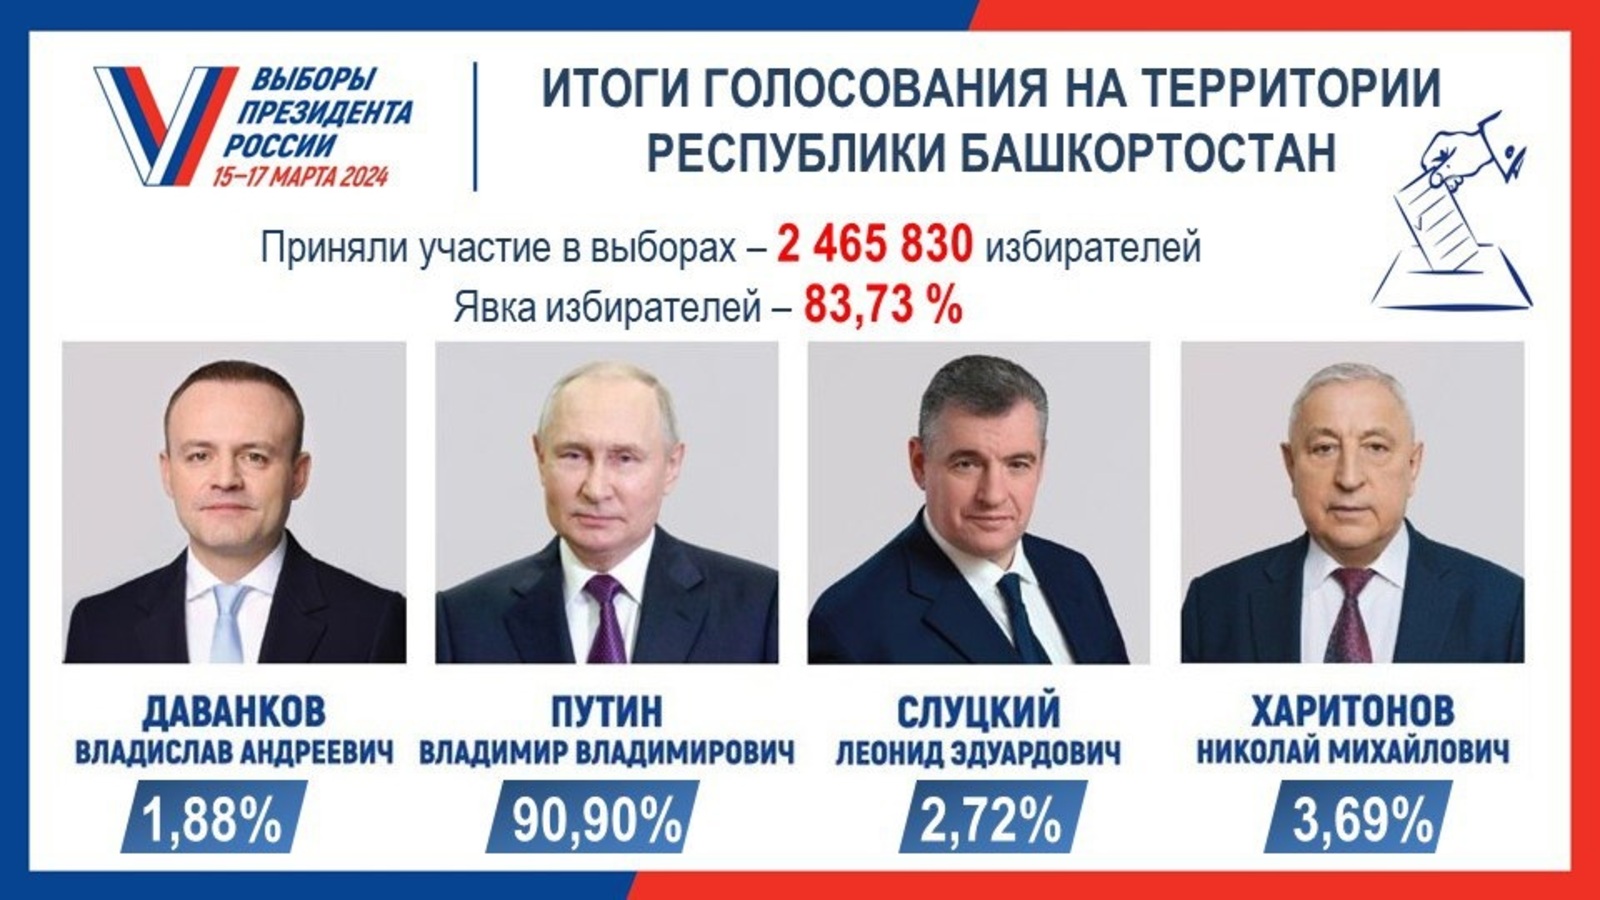 В Башкирии подвели итоги выборов президента России на территории республики